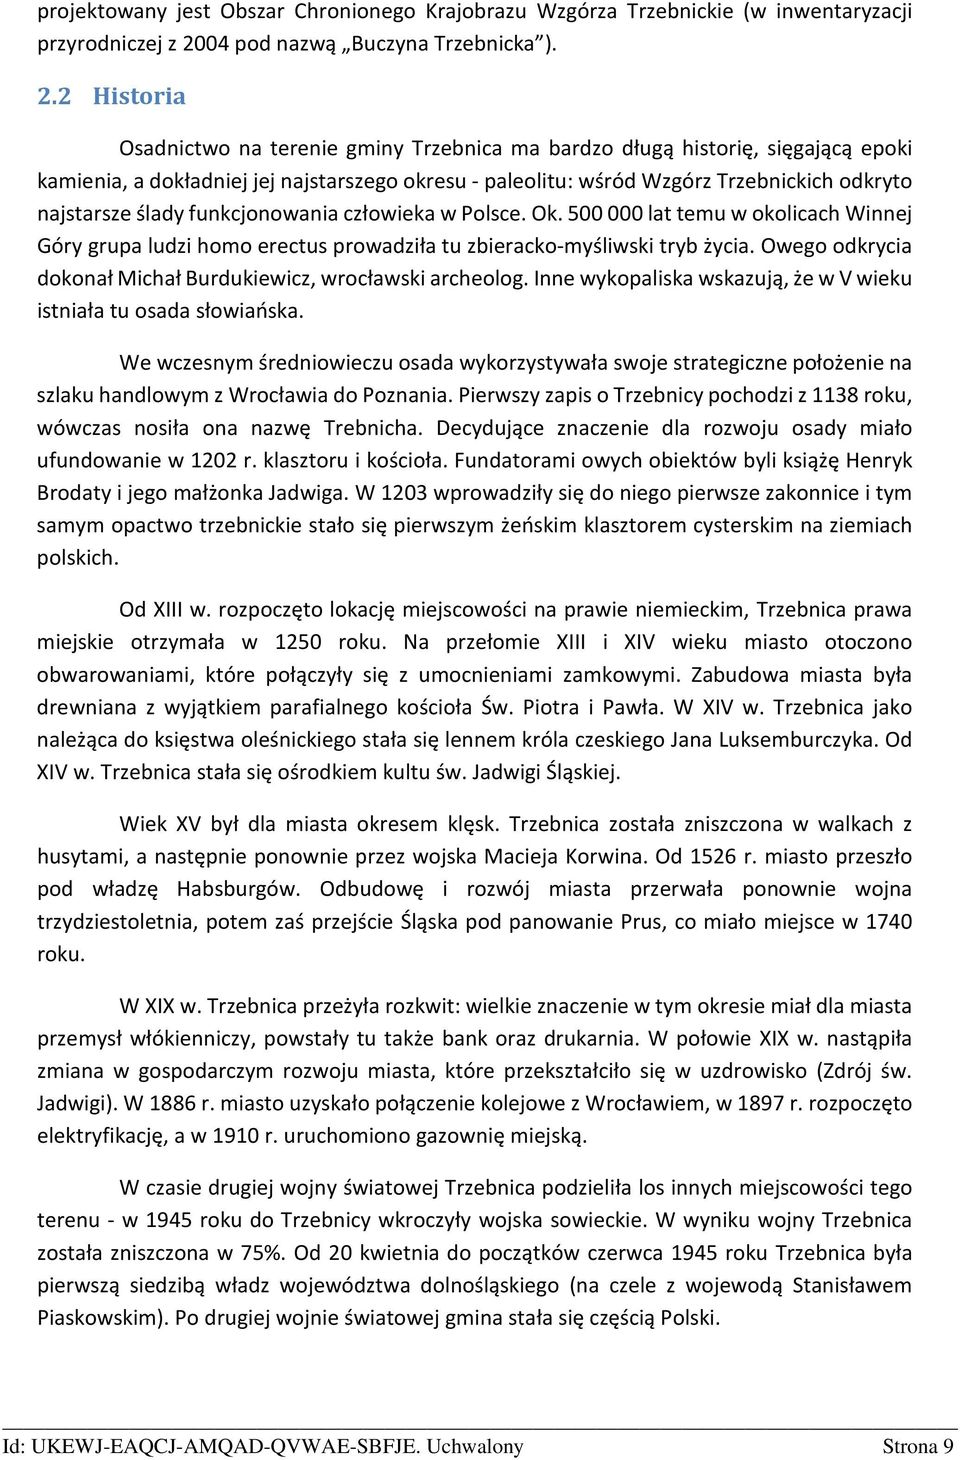 2 Historia Osadnictwo na terenie gminy Trzebnica ma bardzo długą historię, sięgającą epoki kamienia, a dokładniej jej najstarszego okresu - paleolitu: wśród Wzgórz Trzebnickich odkryto najstarsze